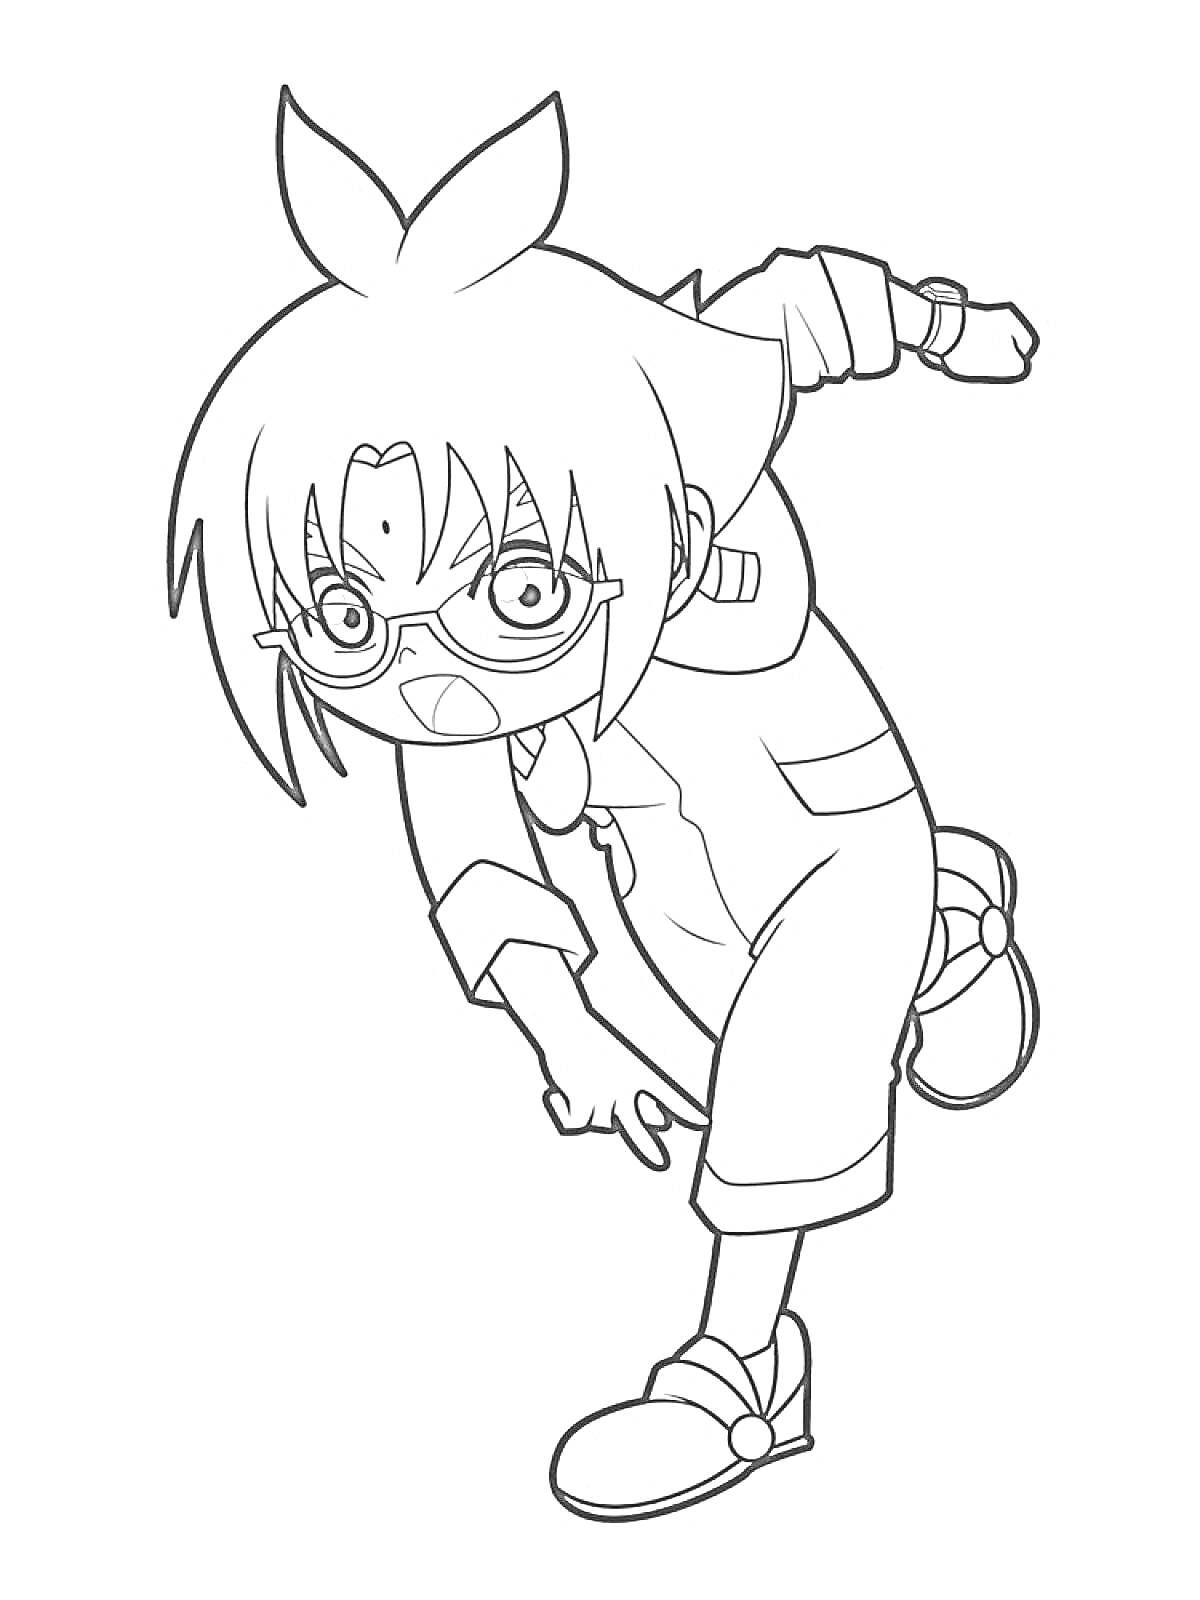 Раскраска Мальчик с очками и рюкзаком, в бегущей позе с поднятой рукой